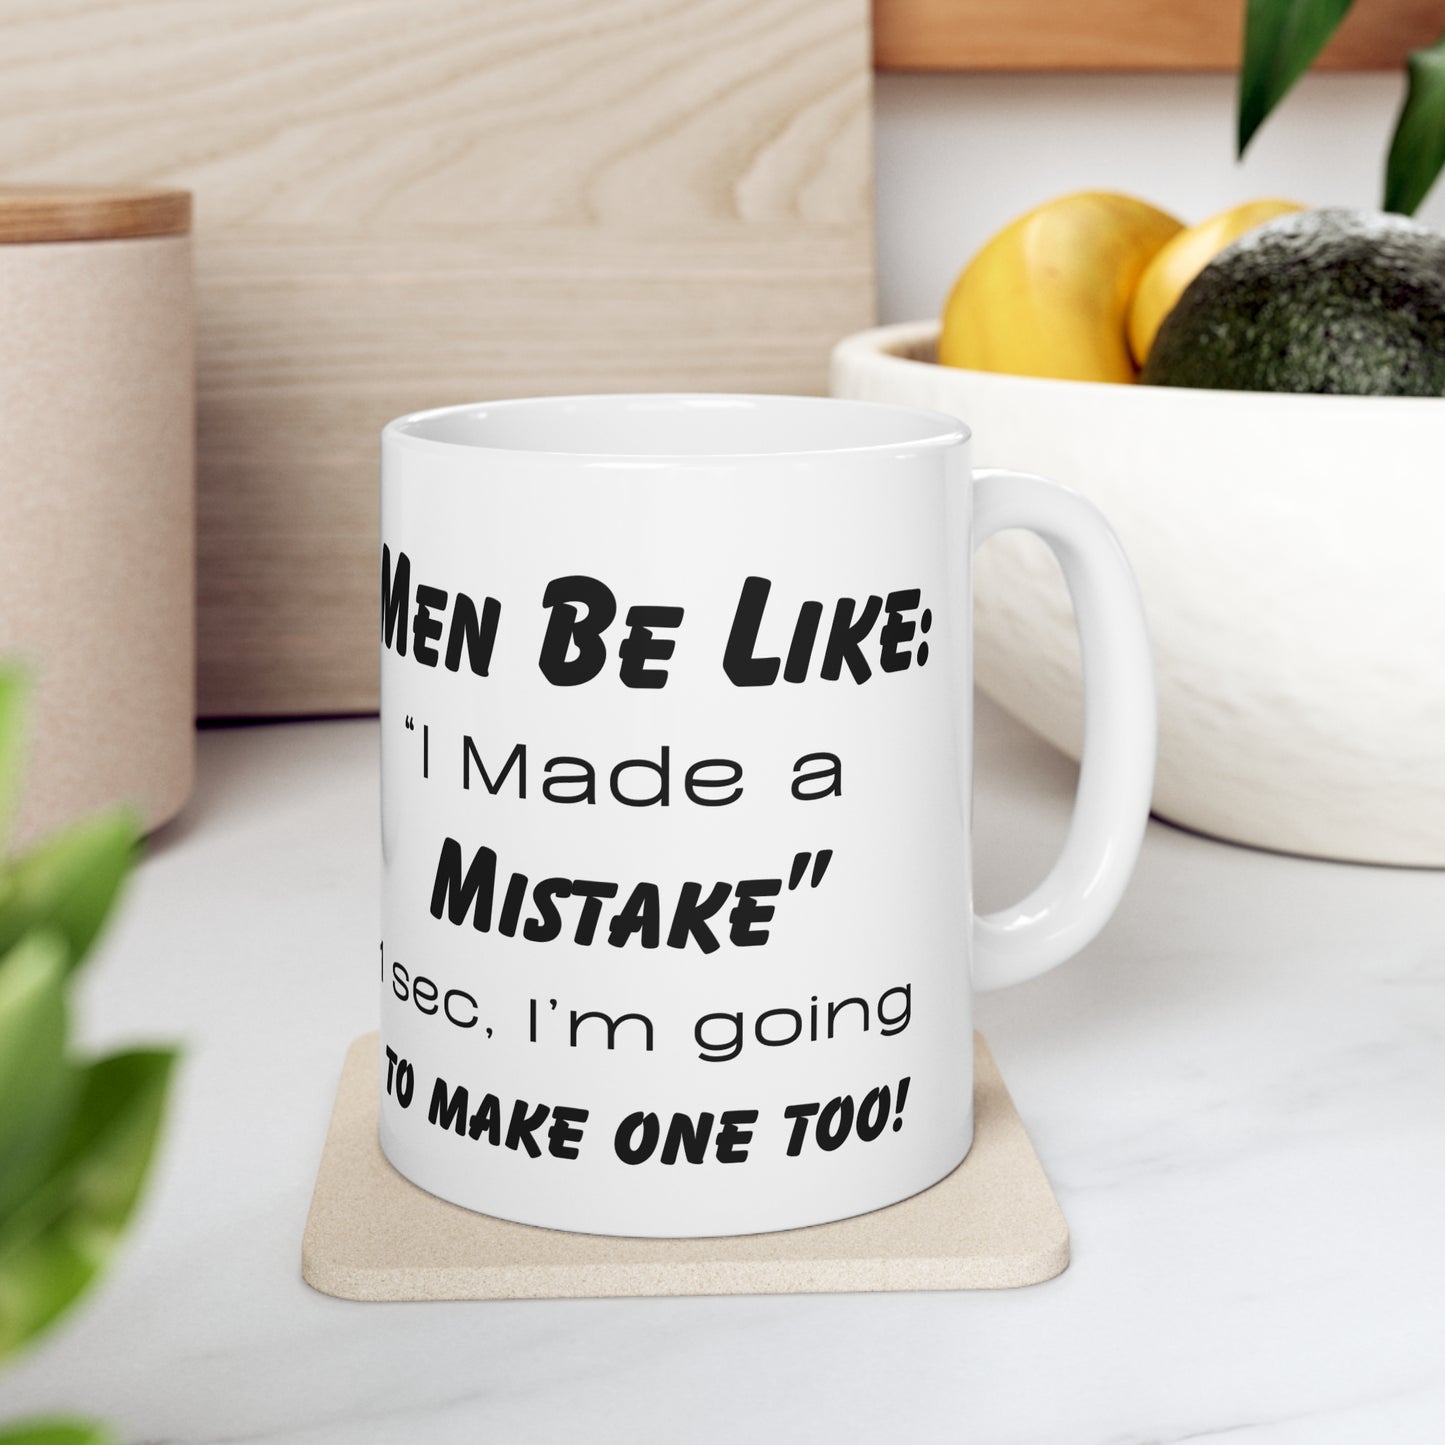 Men be like, I made a Mistake. 1 Sec, I'm going to make one too! Ceramic Coffee Cups, 11oz, 15oz